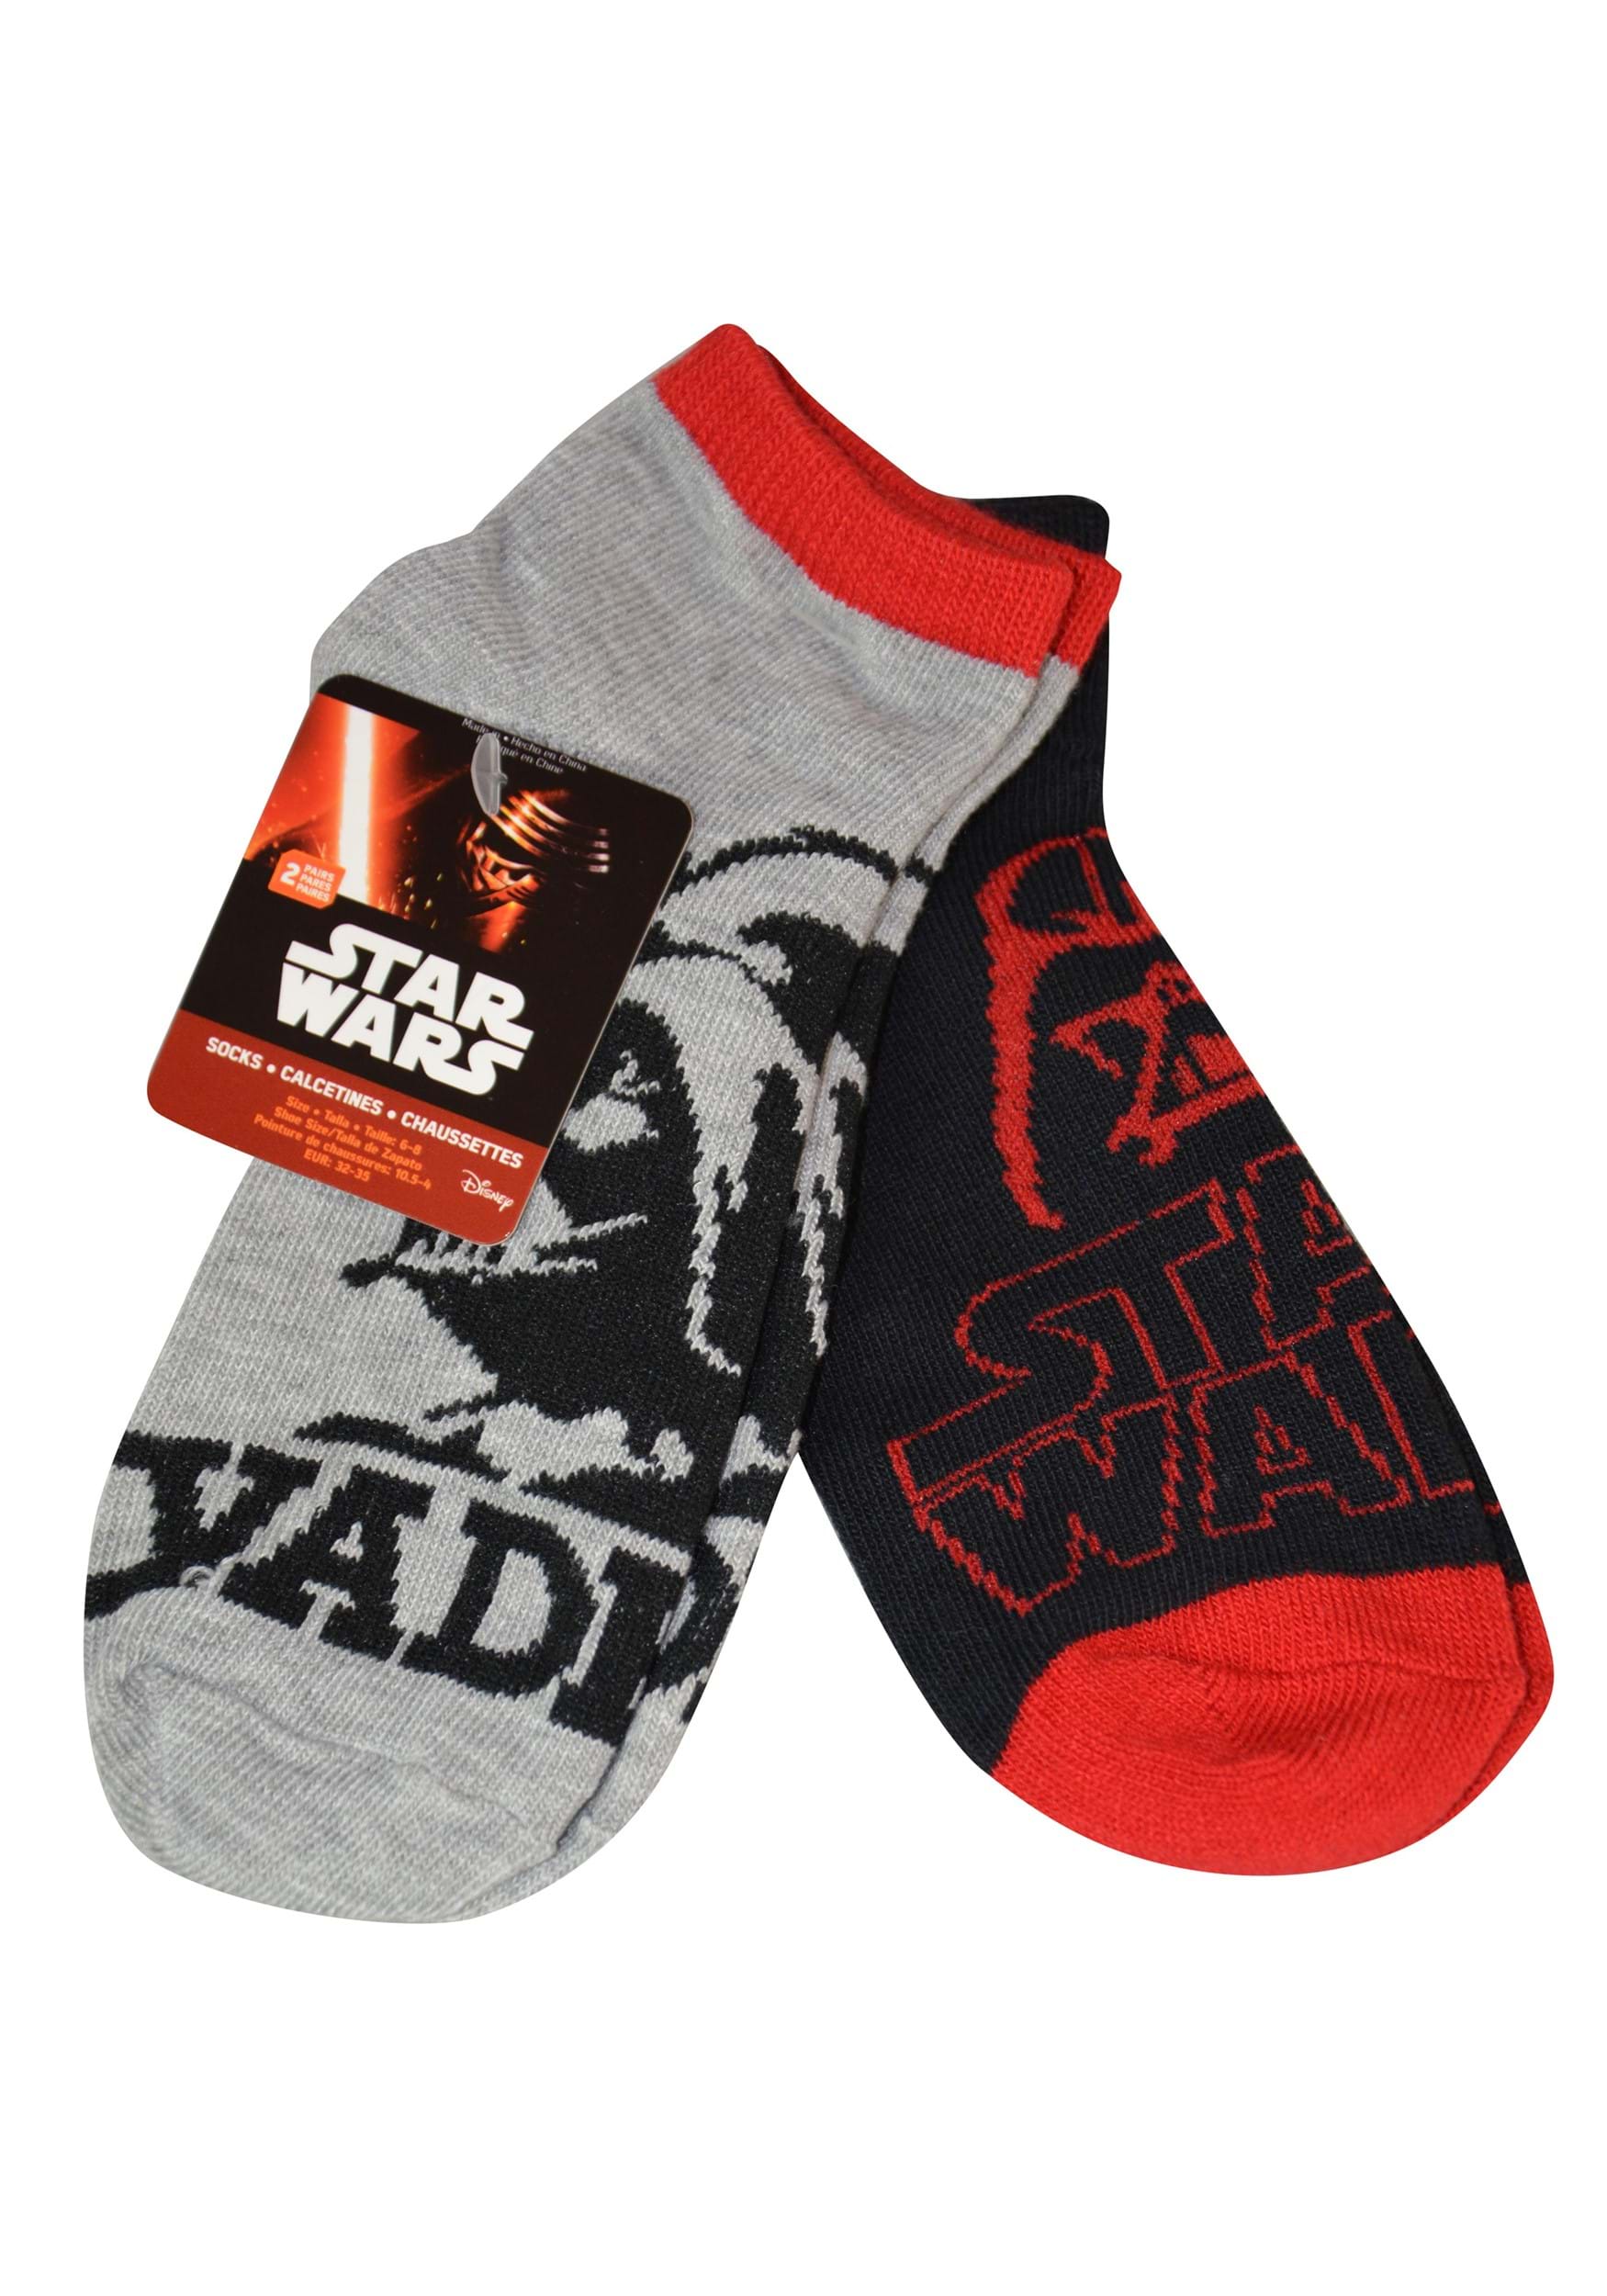 Star Wars 2 Pack Ankle Socks for Kids Size 6-8